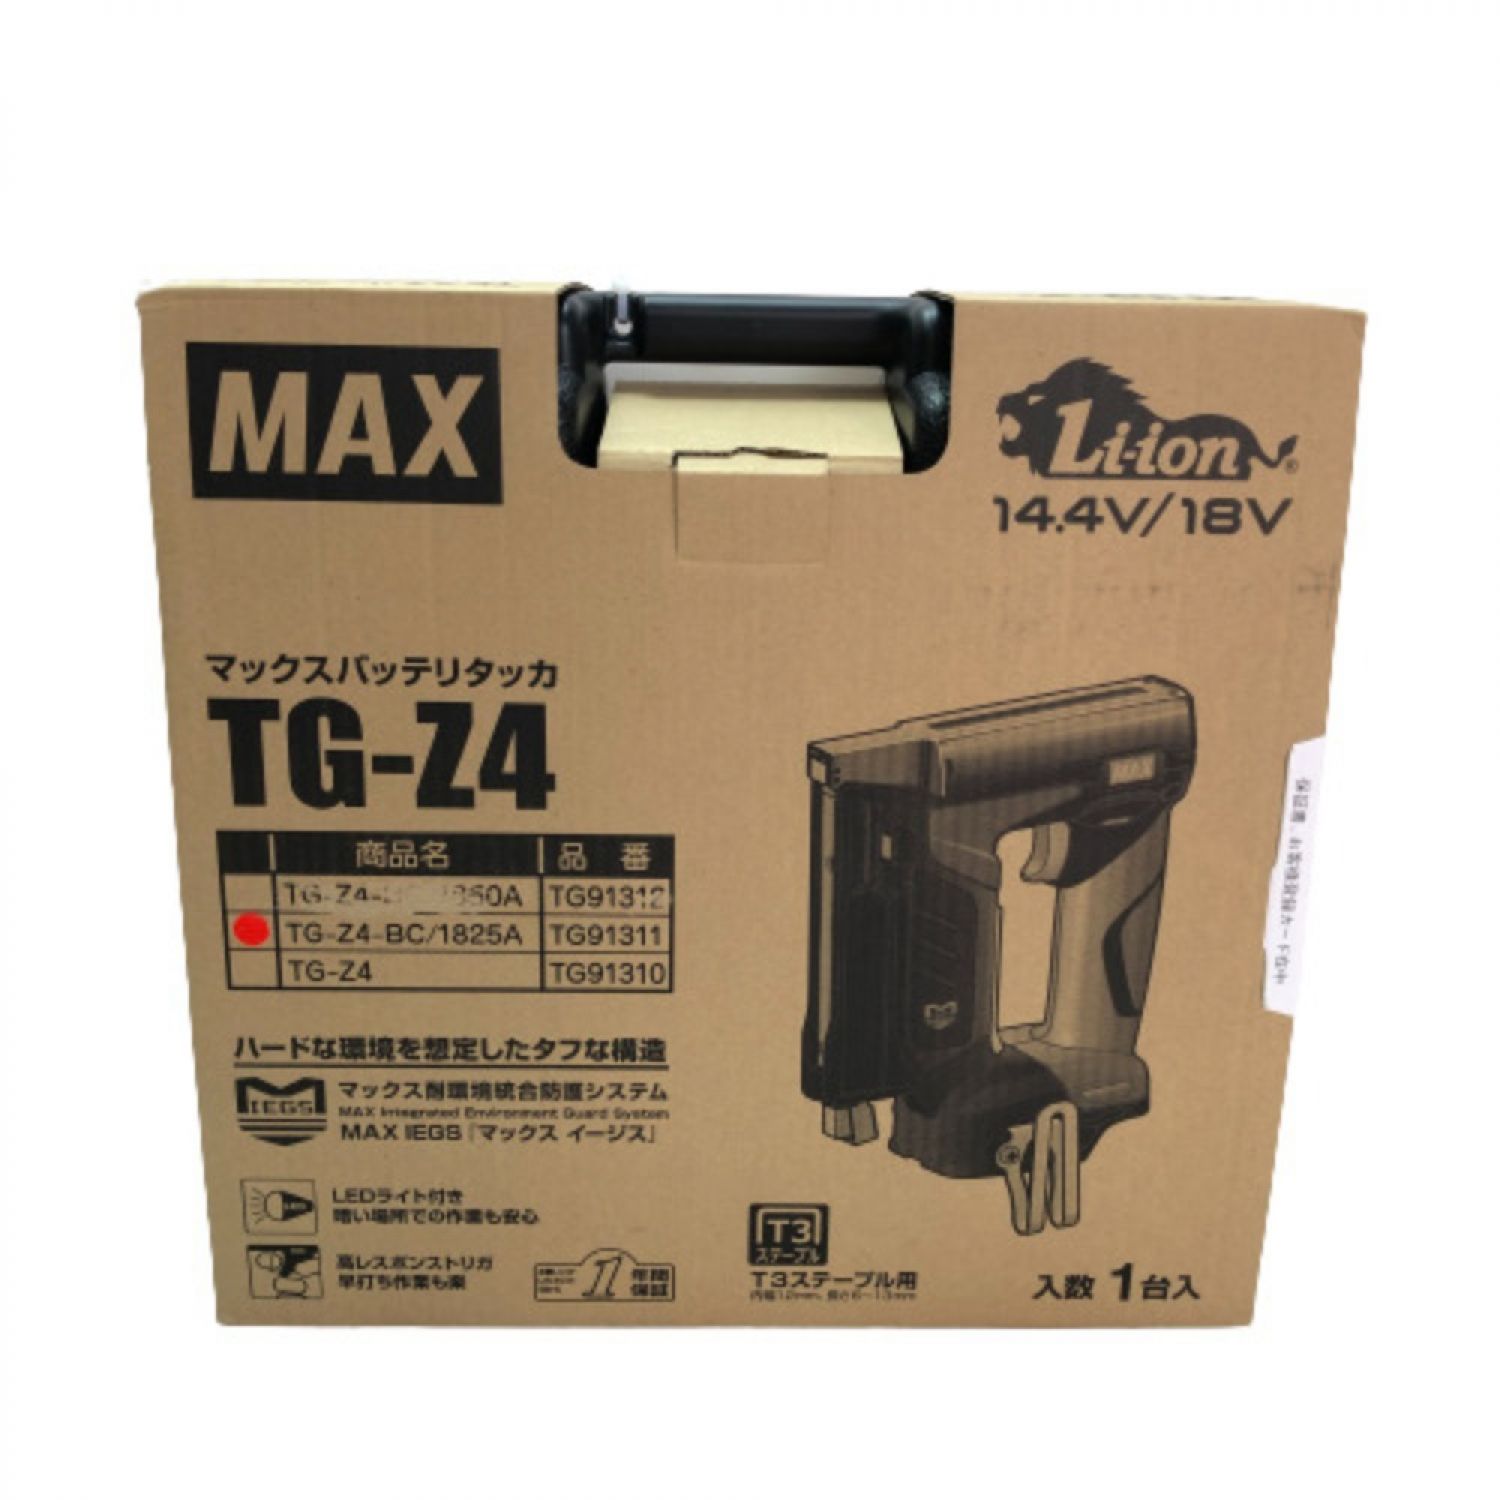 中古】 MAX マックス バッテリタッカ 充電器・充電池(18v 2.5Ah)・ケース付 TG-Z4 Sランク｜総合リサイクルショップ  なんでもリサイクルビッグバン オンラインストア